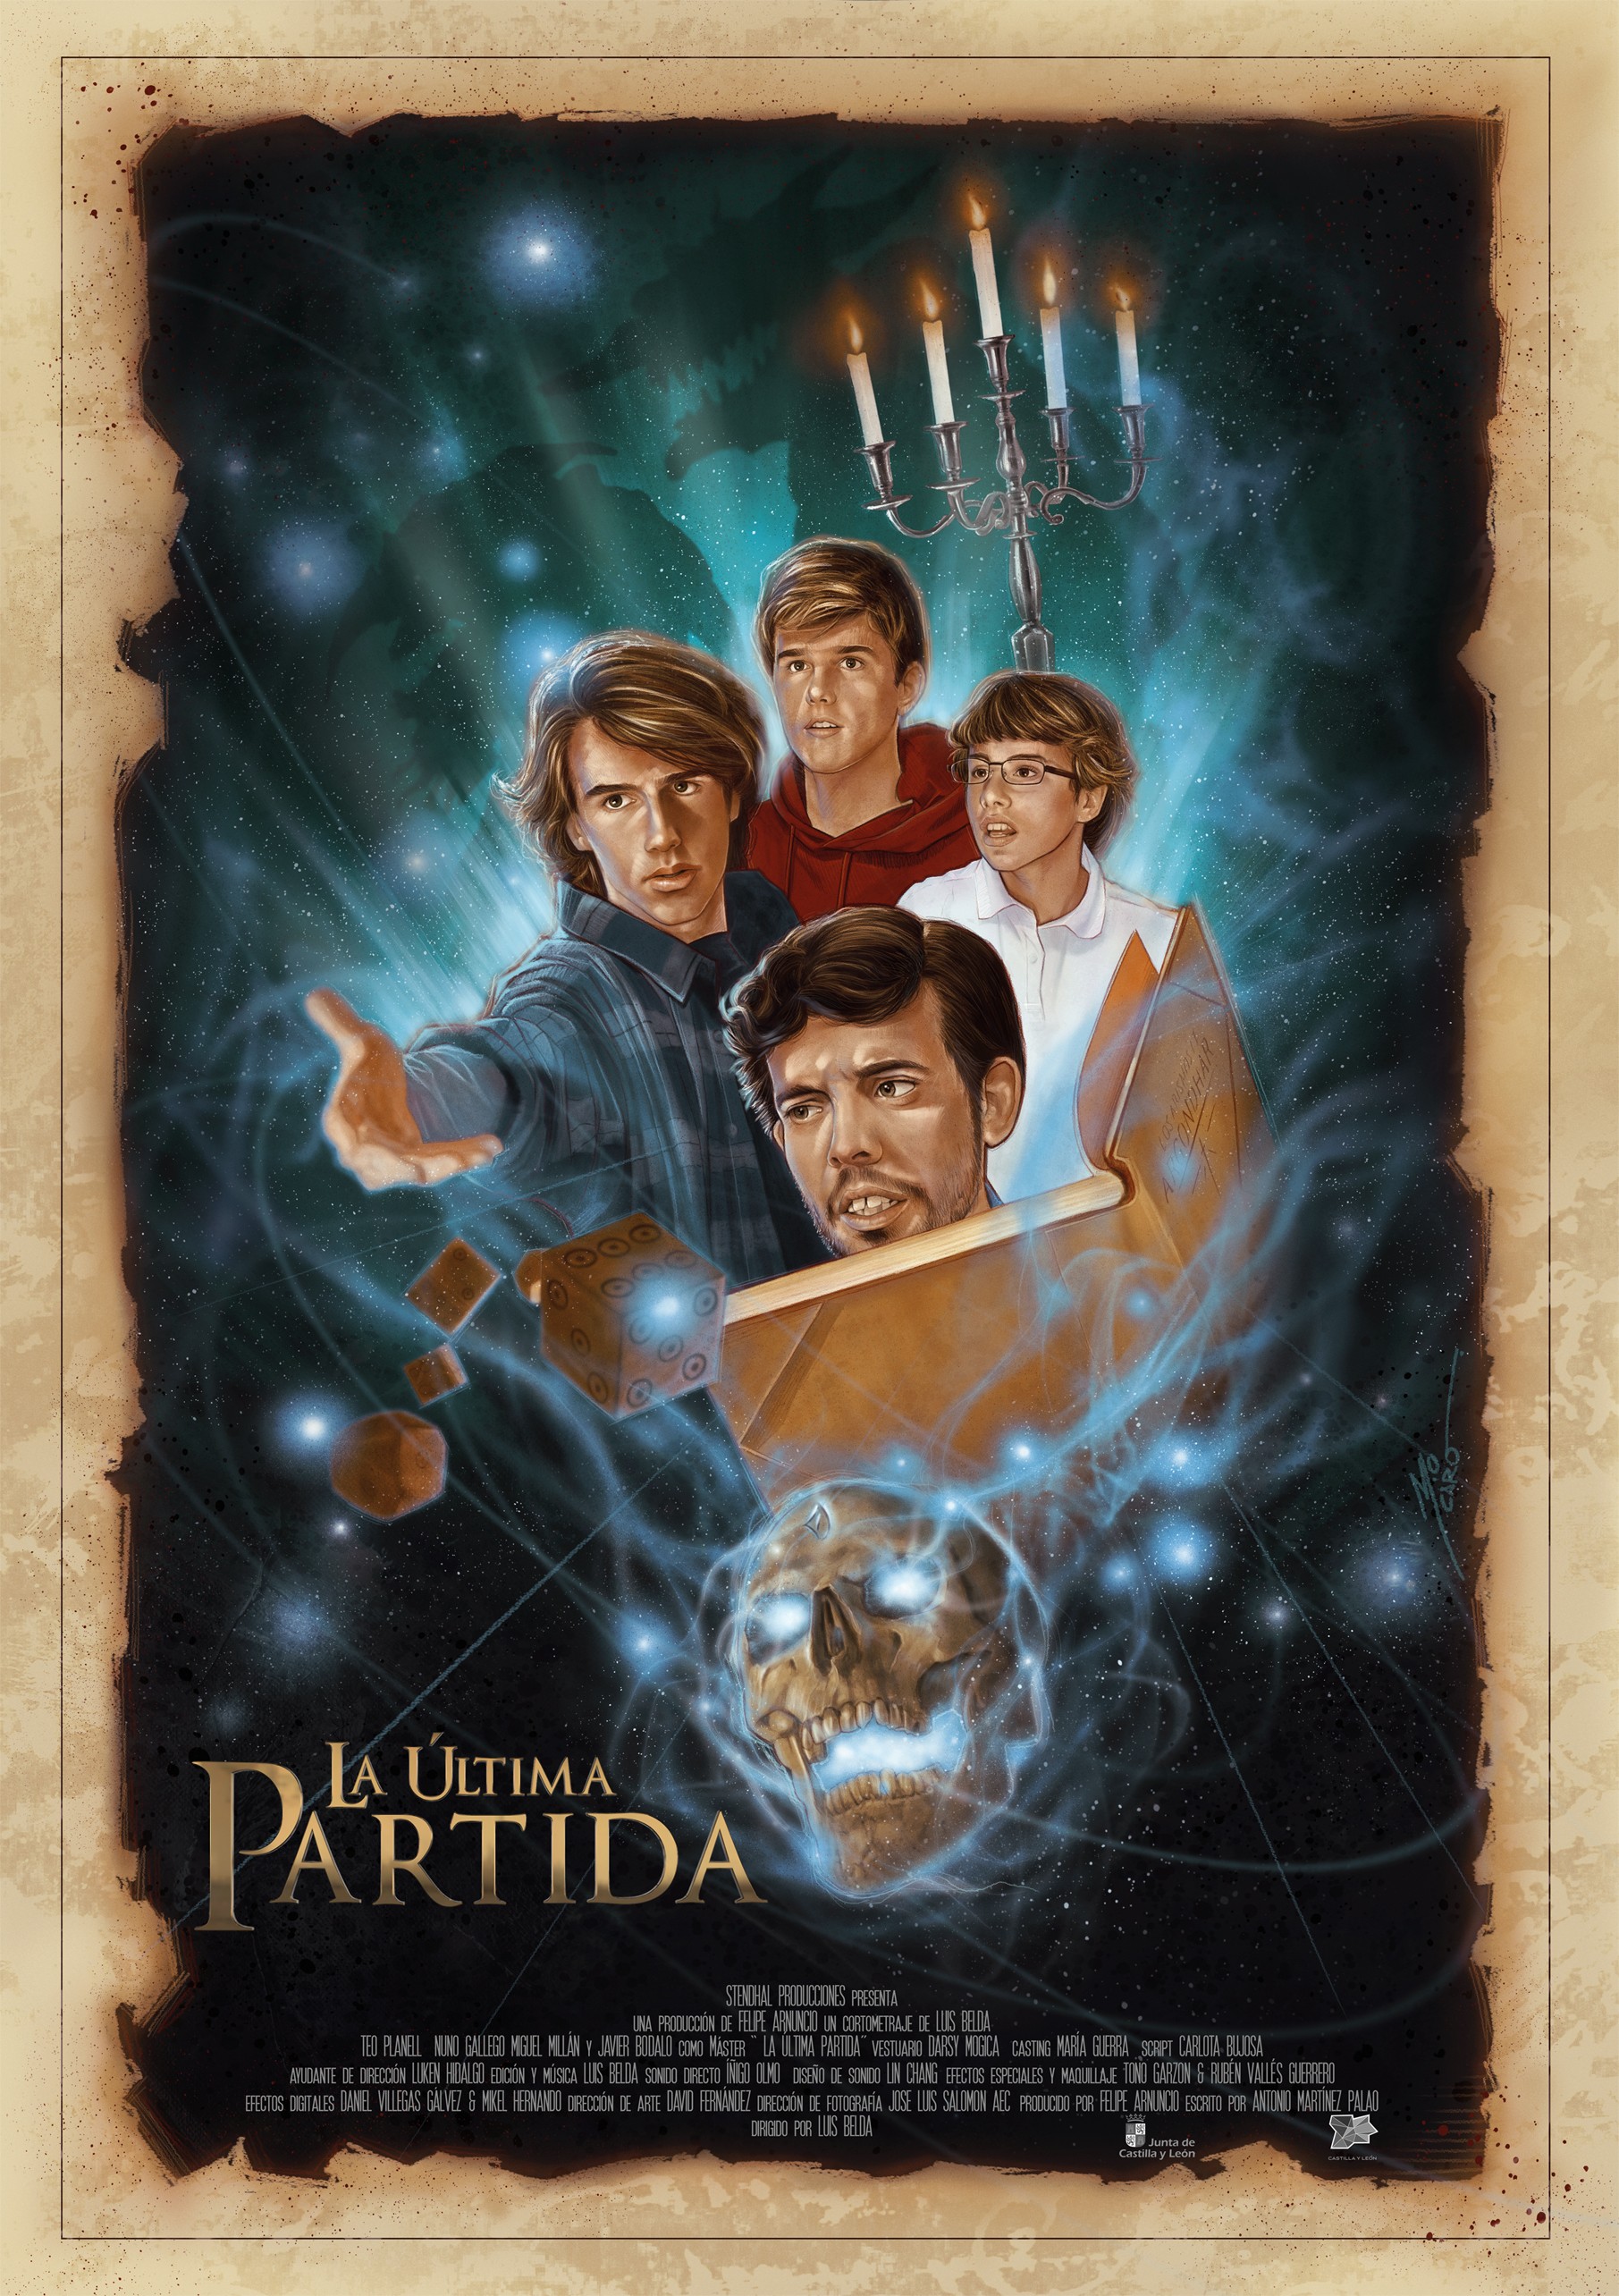 Mega Sized Movie Poster Image for La ltima partida